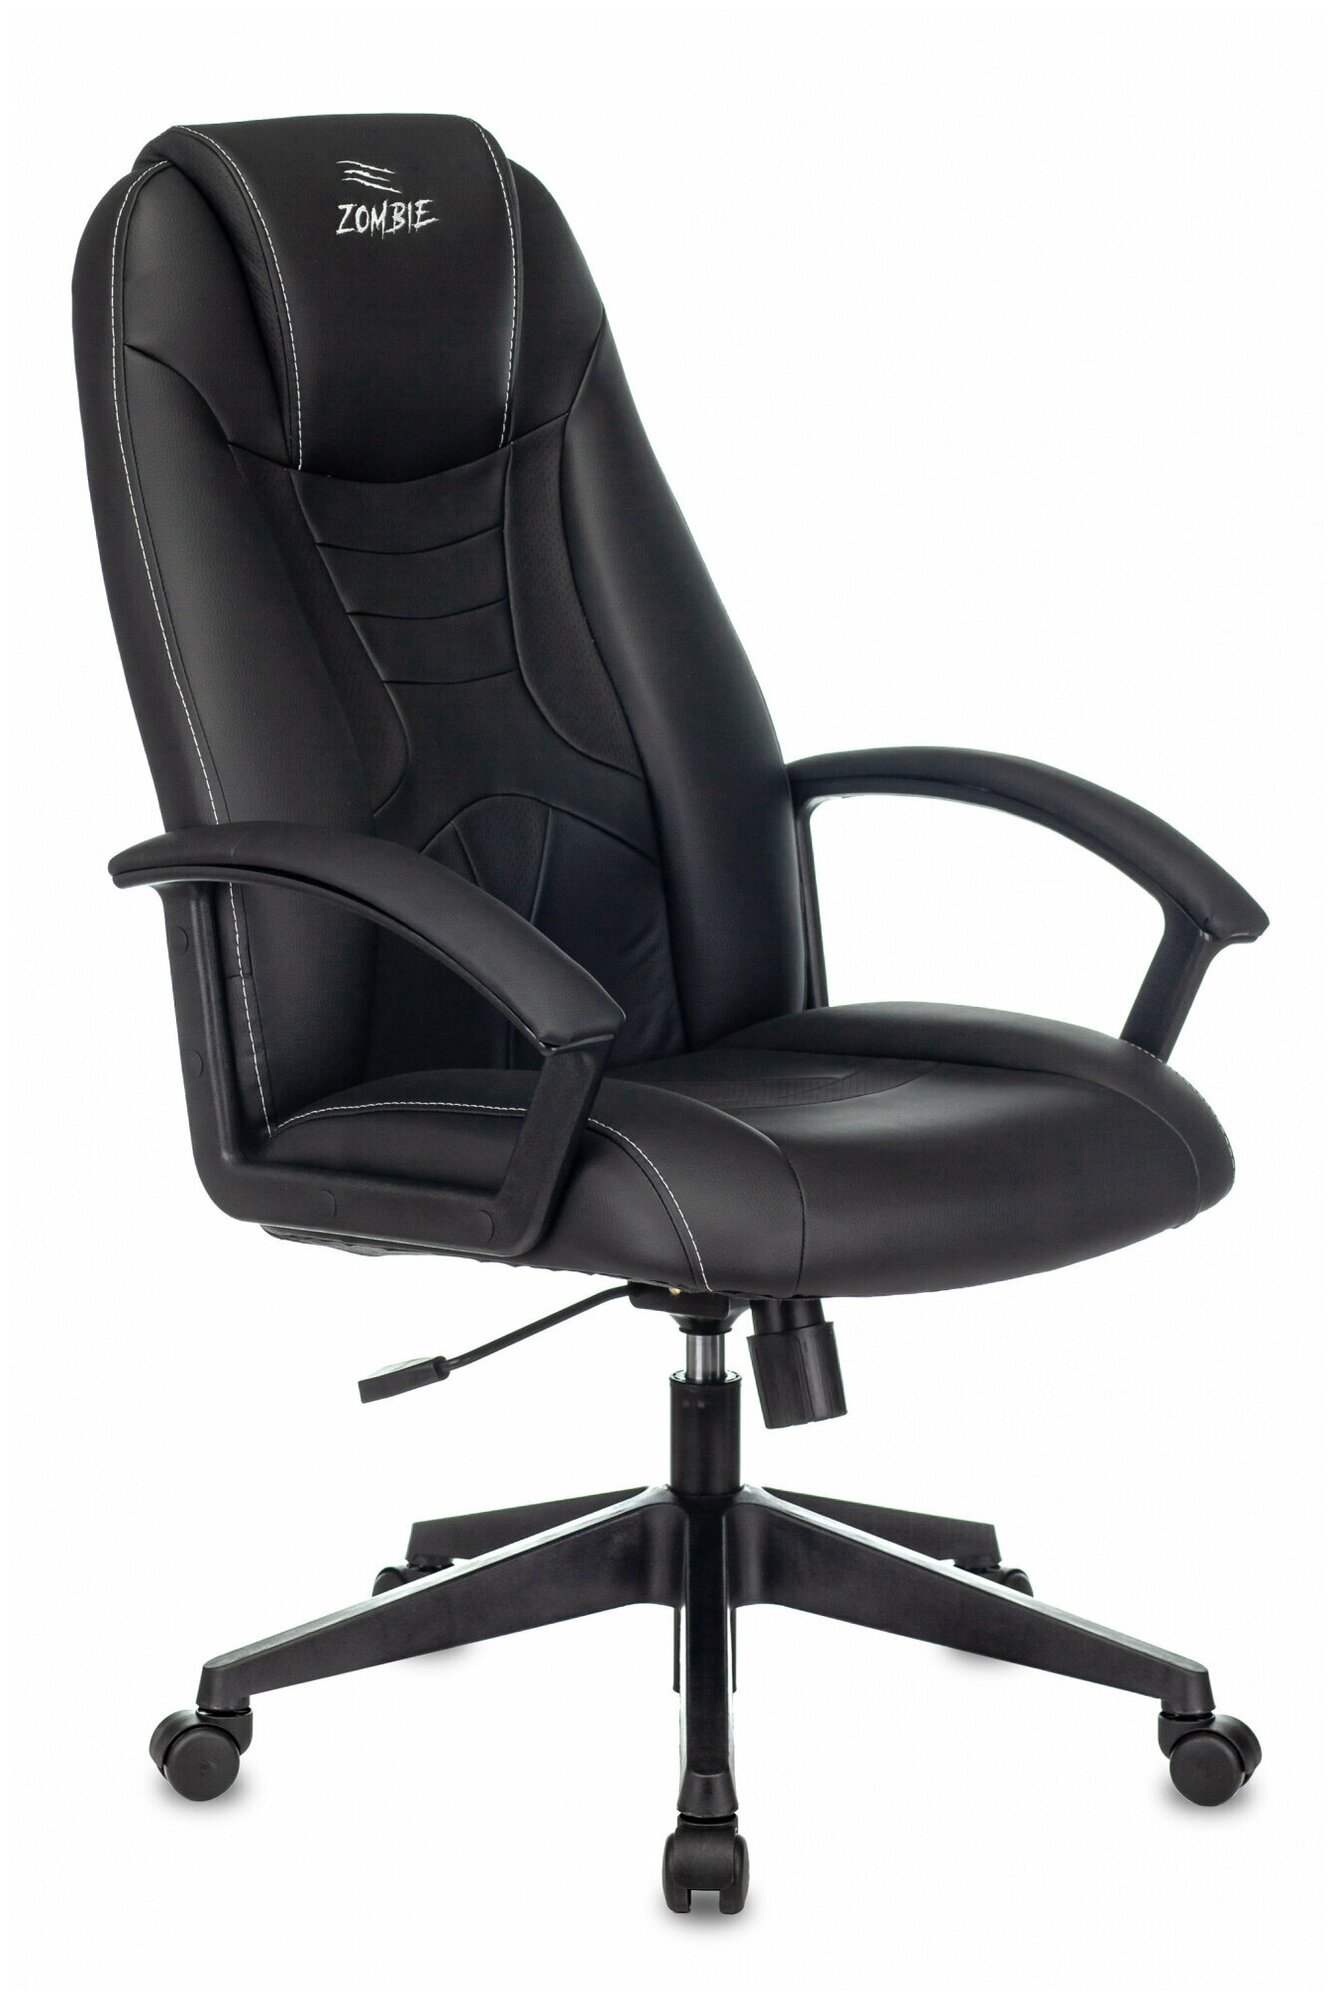 Игровое компьютерное кресло Бюрократ Zombie 8 (обивка: экокожа, с подголовником, крестовина пластик, цвет: черный)